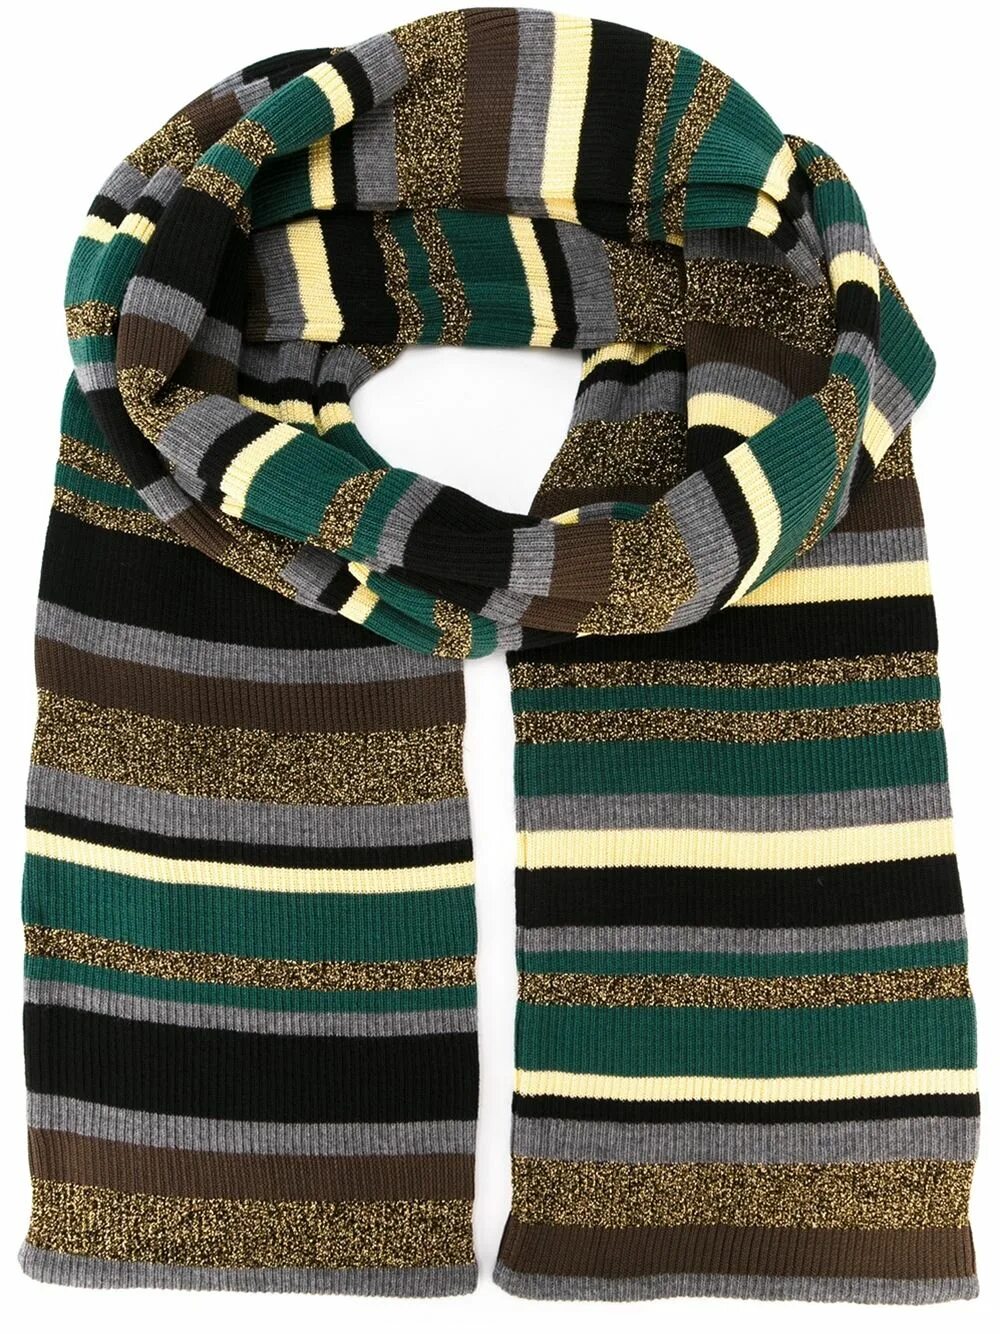 Полосатый шарф. Полосатый зеленый шарф. Шарф в полоску. Модные полосатые шарфы.